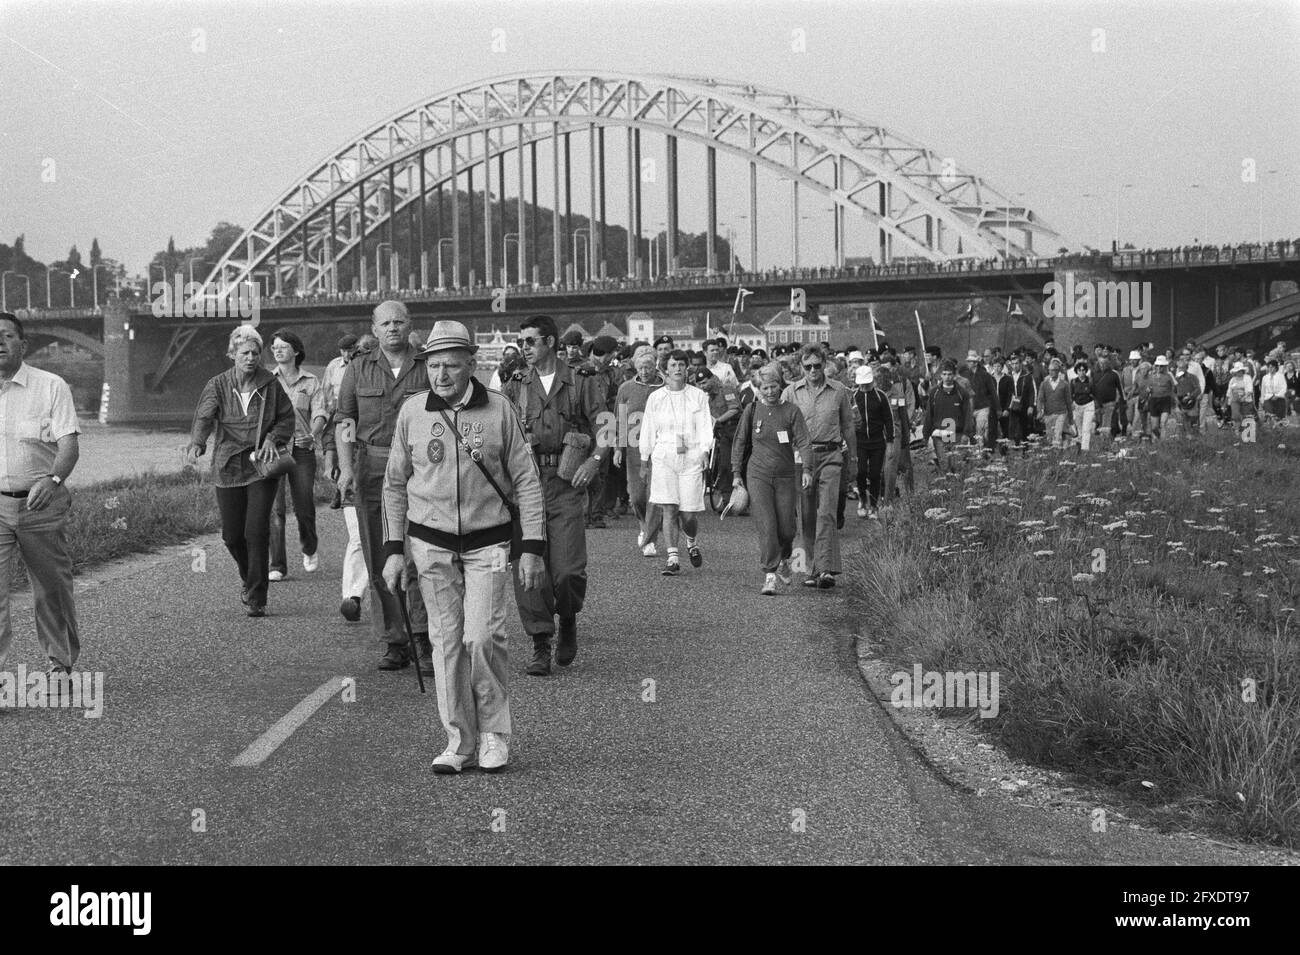 File:KNVB Beker Quick 1888 Nijmegen 1949.jpg - Wikipedia